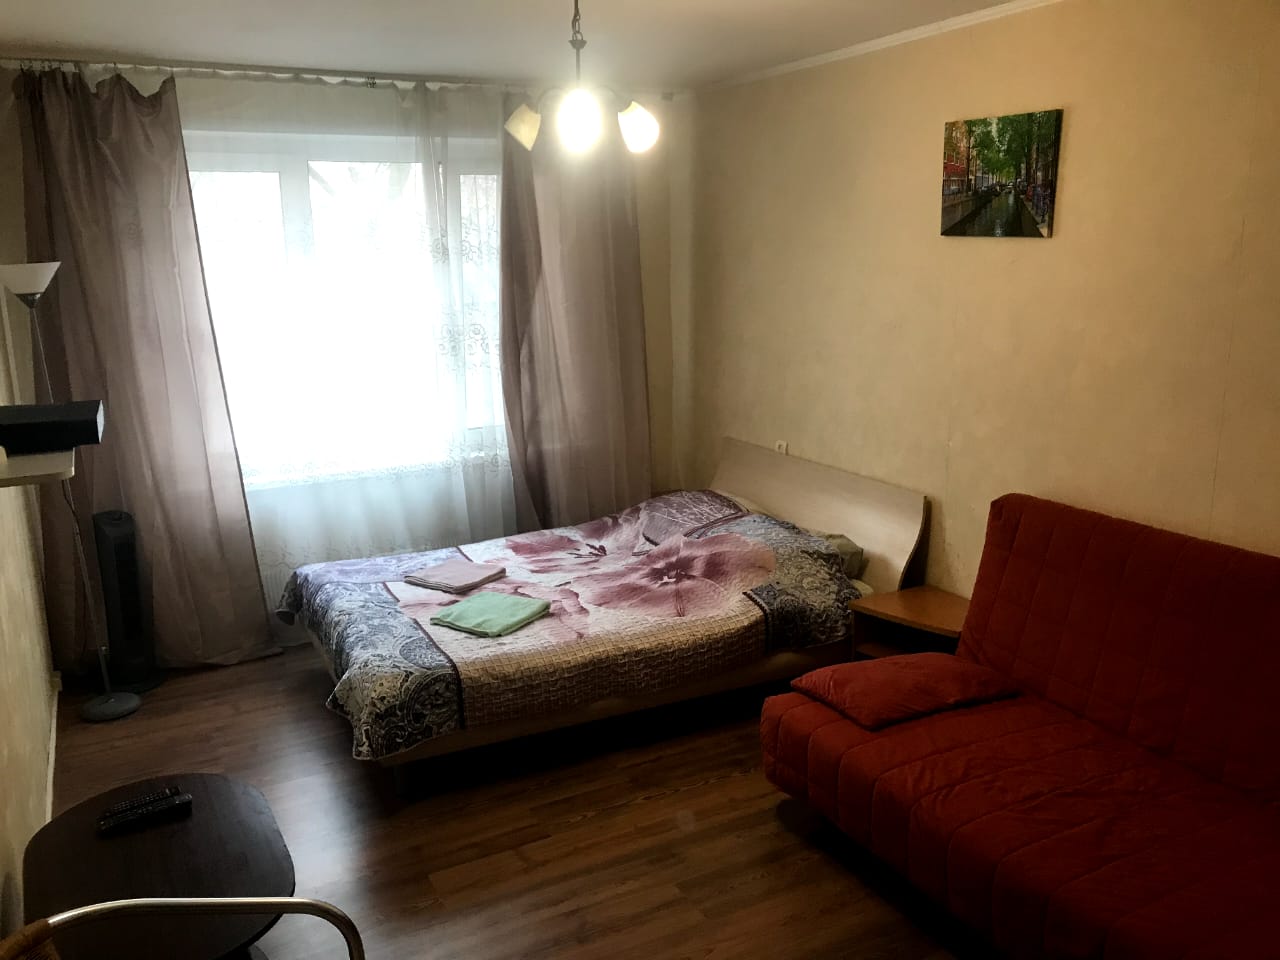 Однокомнатная квартира на улице Родионова в Химках. Кровать